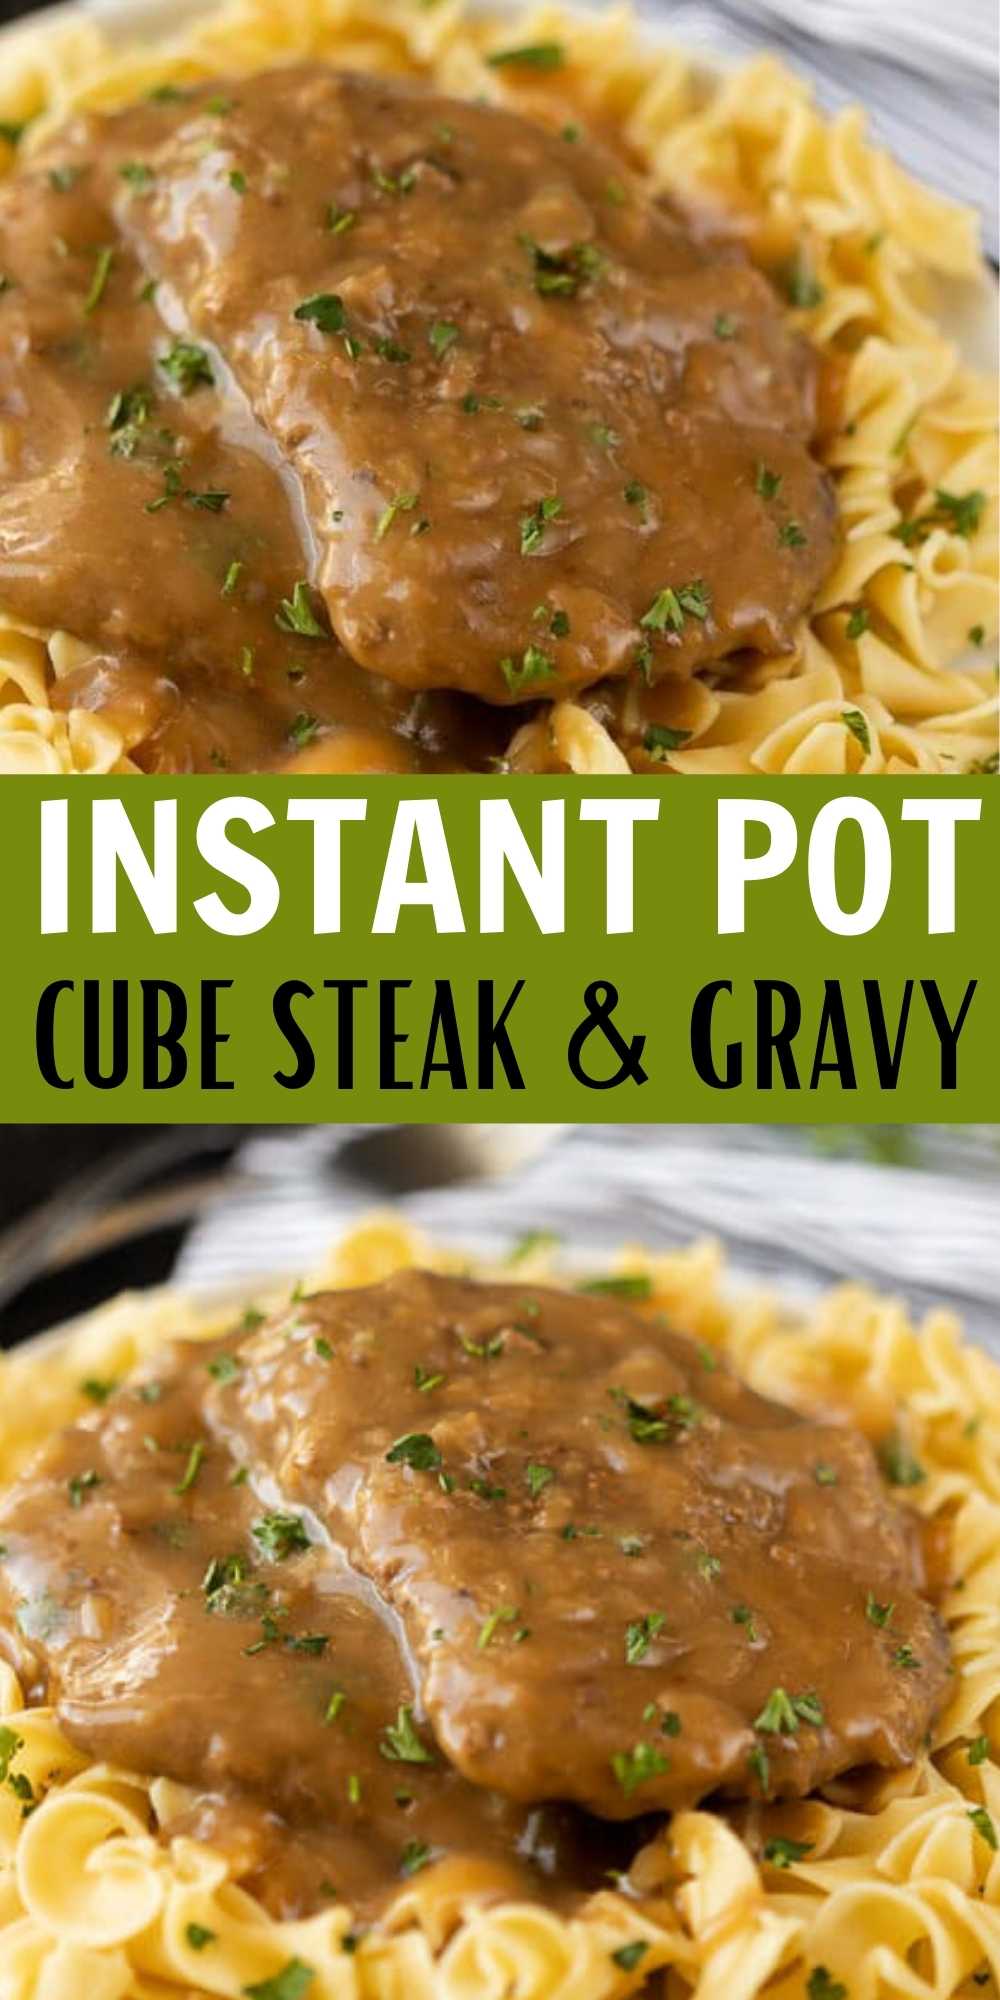 Instant pot cube steak - Instant pot cube steak with gravy